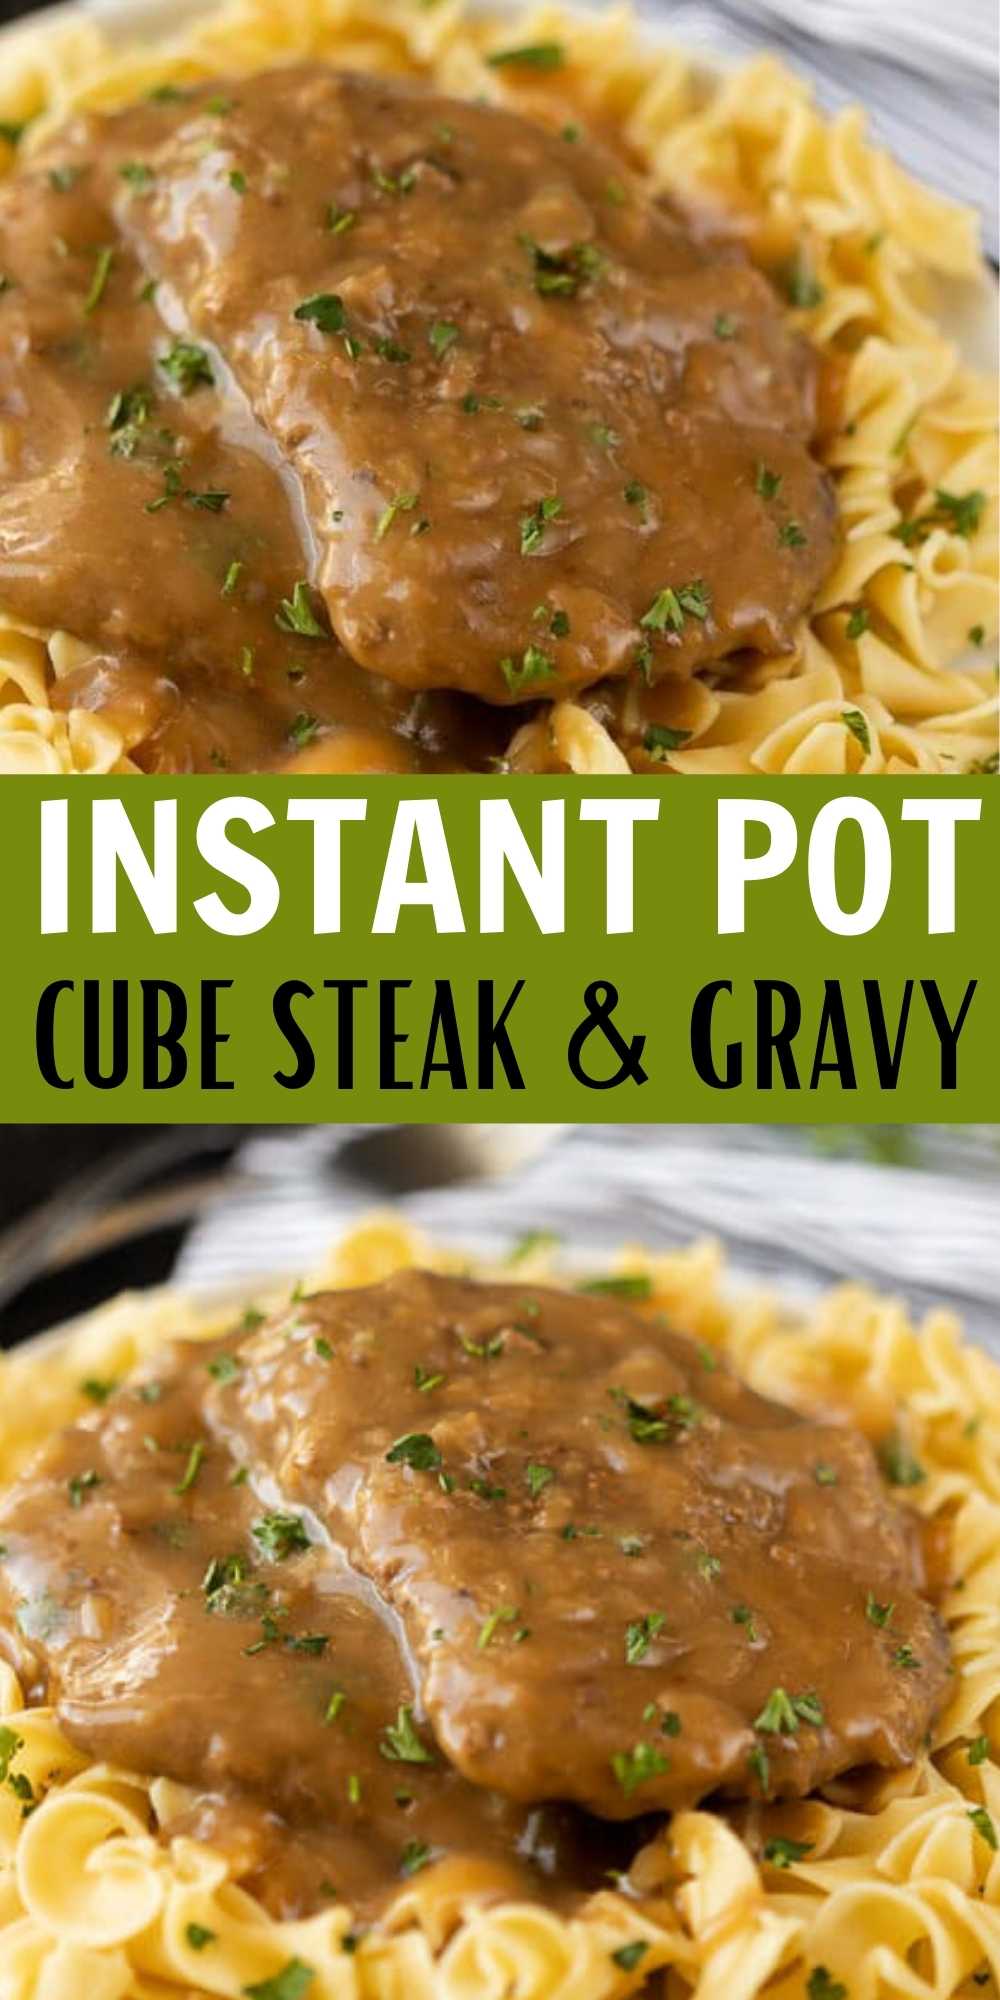 Instant pot cube steak - Instant pot cube steak with gravy